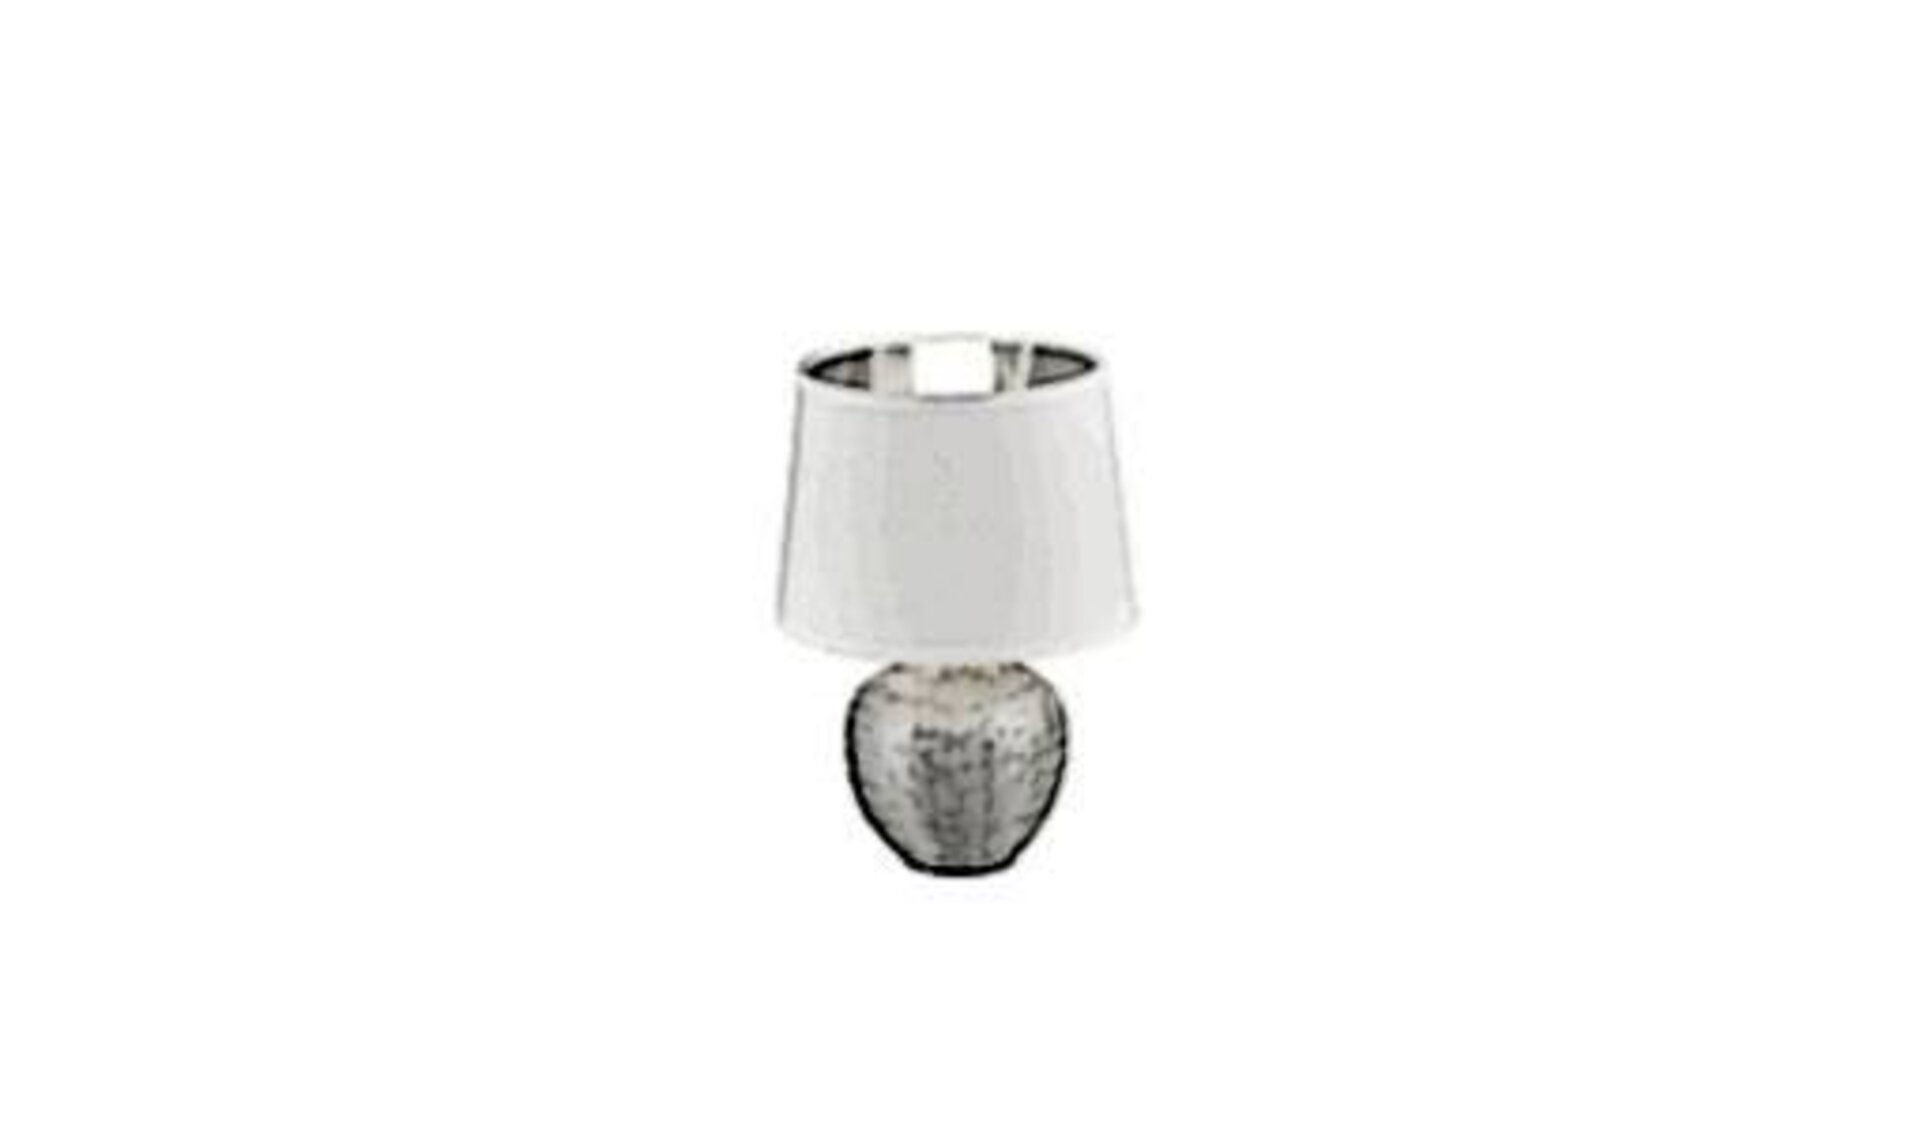 Sinnbild für alle Tischlampen ist ein kugelförmiger Fuß aus Edelstahl und darauf der typische weiße Lampenschirm.